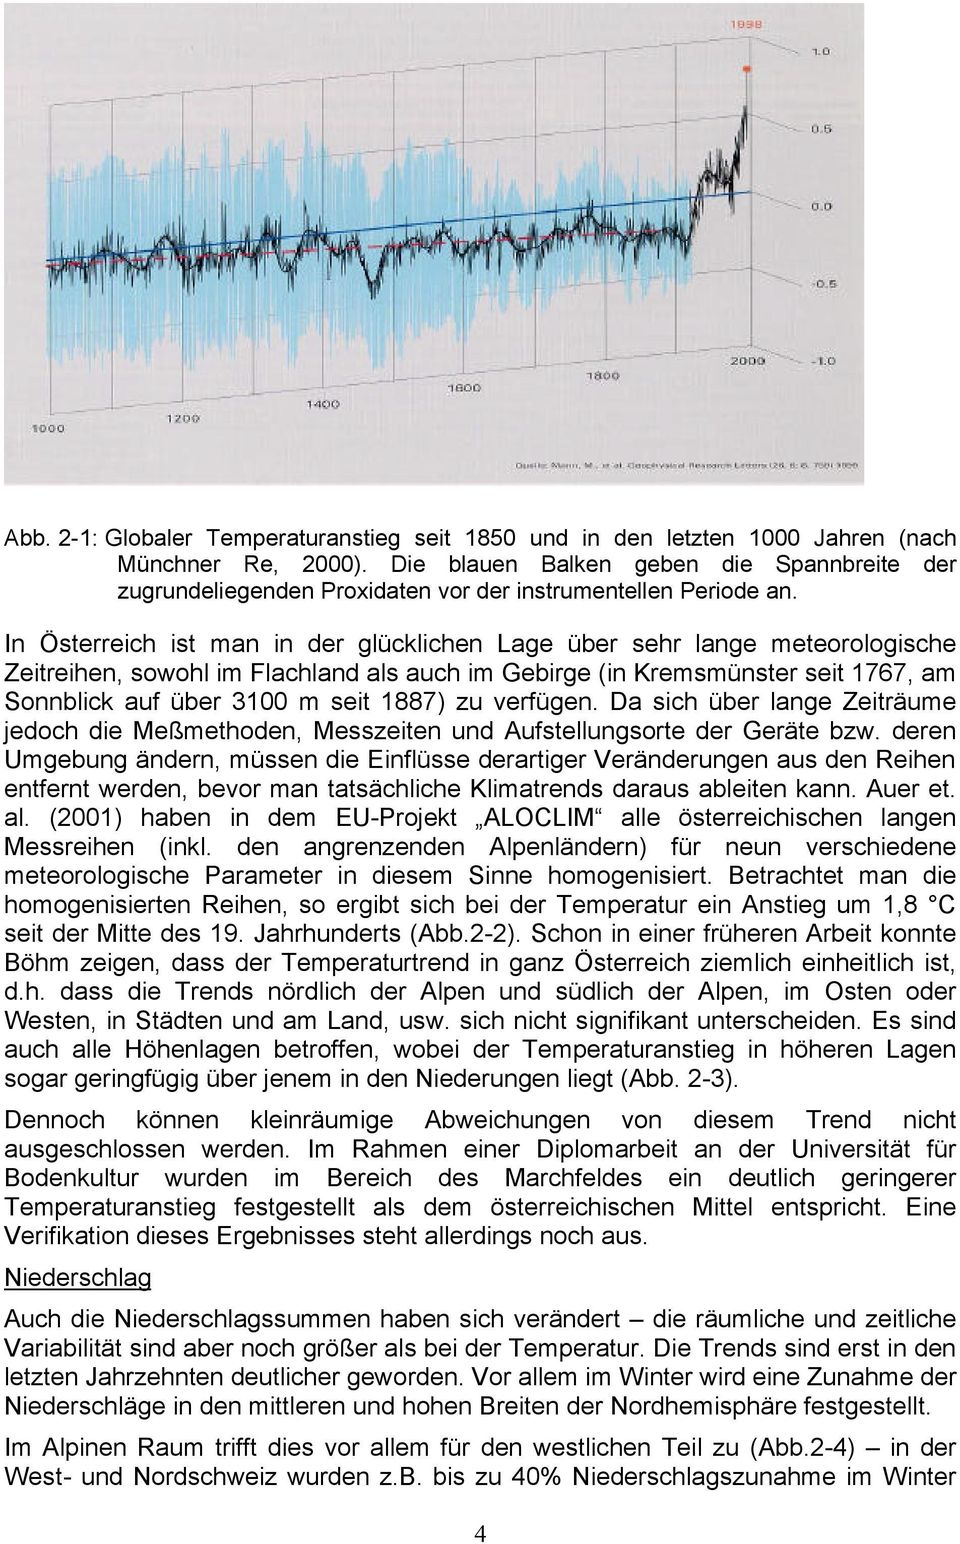 In Österreich ist man in der glücklichen Lage über sehr lange meteorologische Zeitreihen, sowohl im Flachland als auch im Gebirge (in Kremsmünster seit 1767, am Sonnblick auf über 3100 m seit 1887)